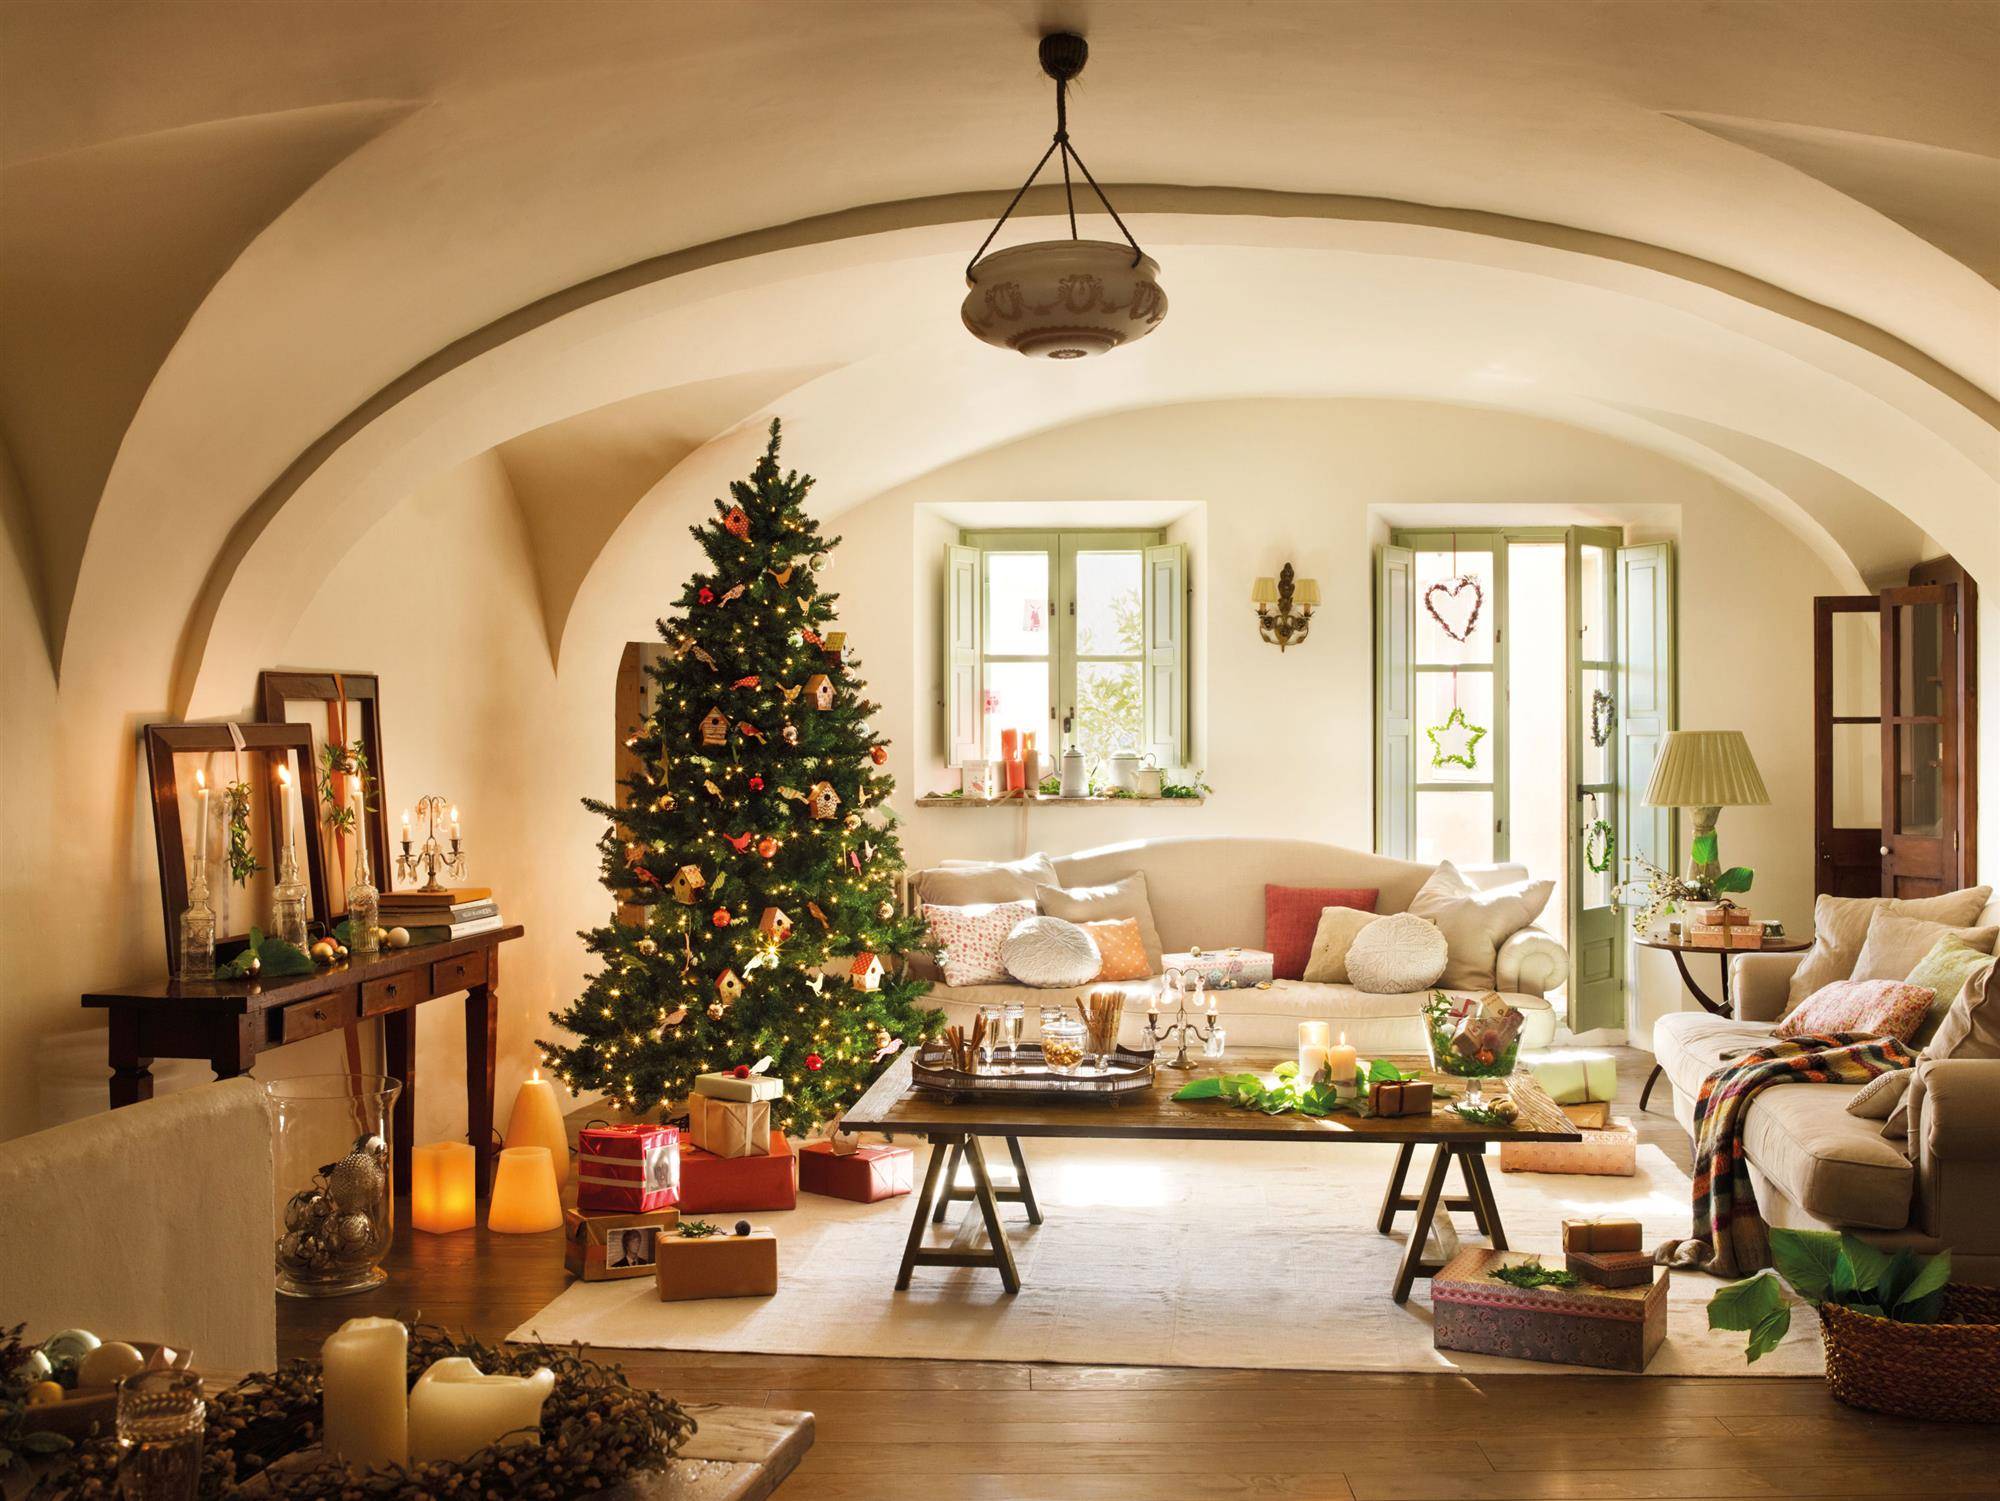 Navidad: 5 estilos para decorar la casa